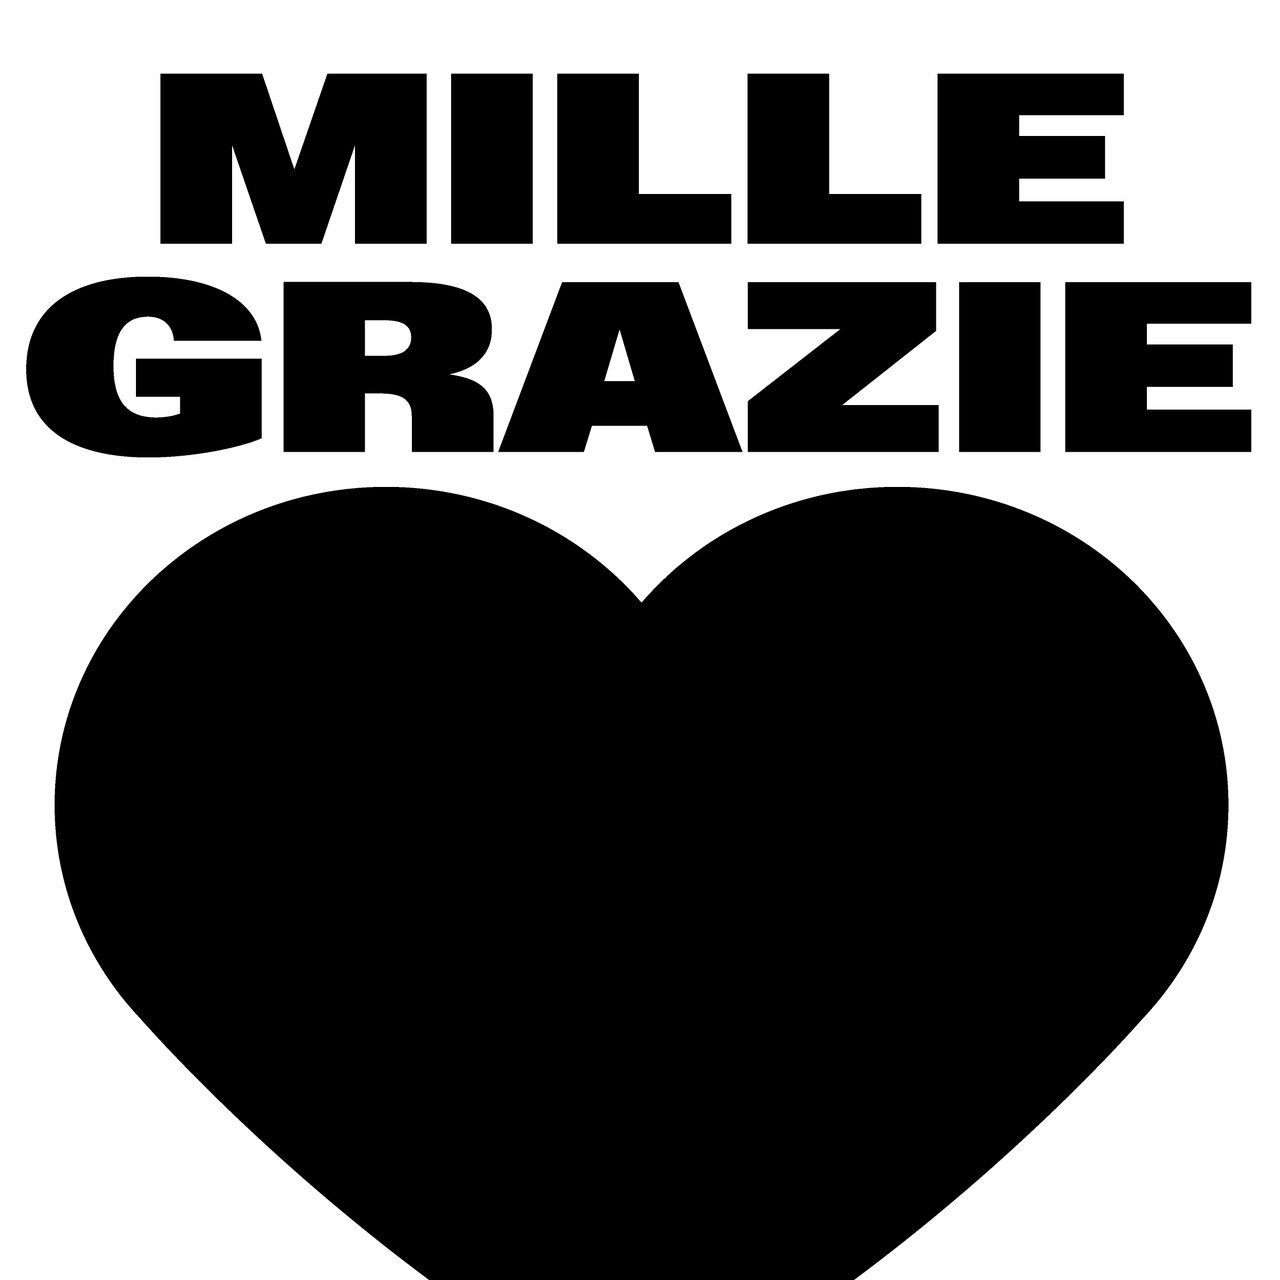 Key Visual der Kampagne Mille Grazie: Herz und Schrift "Mille Grazie"